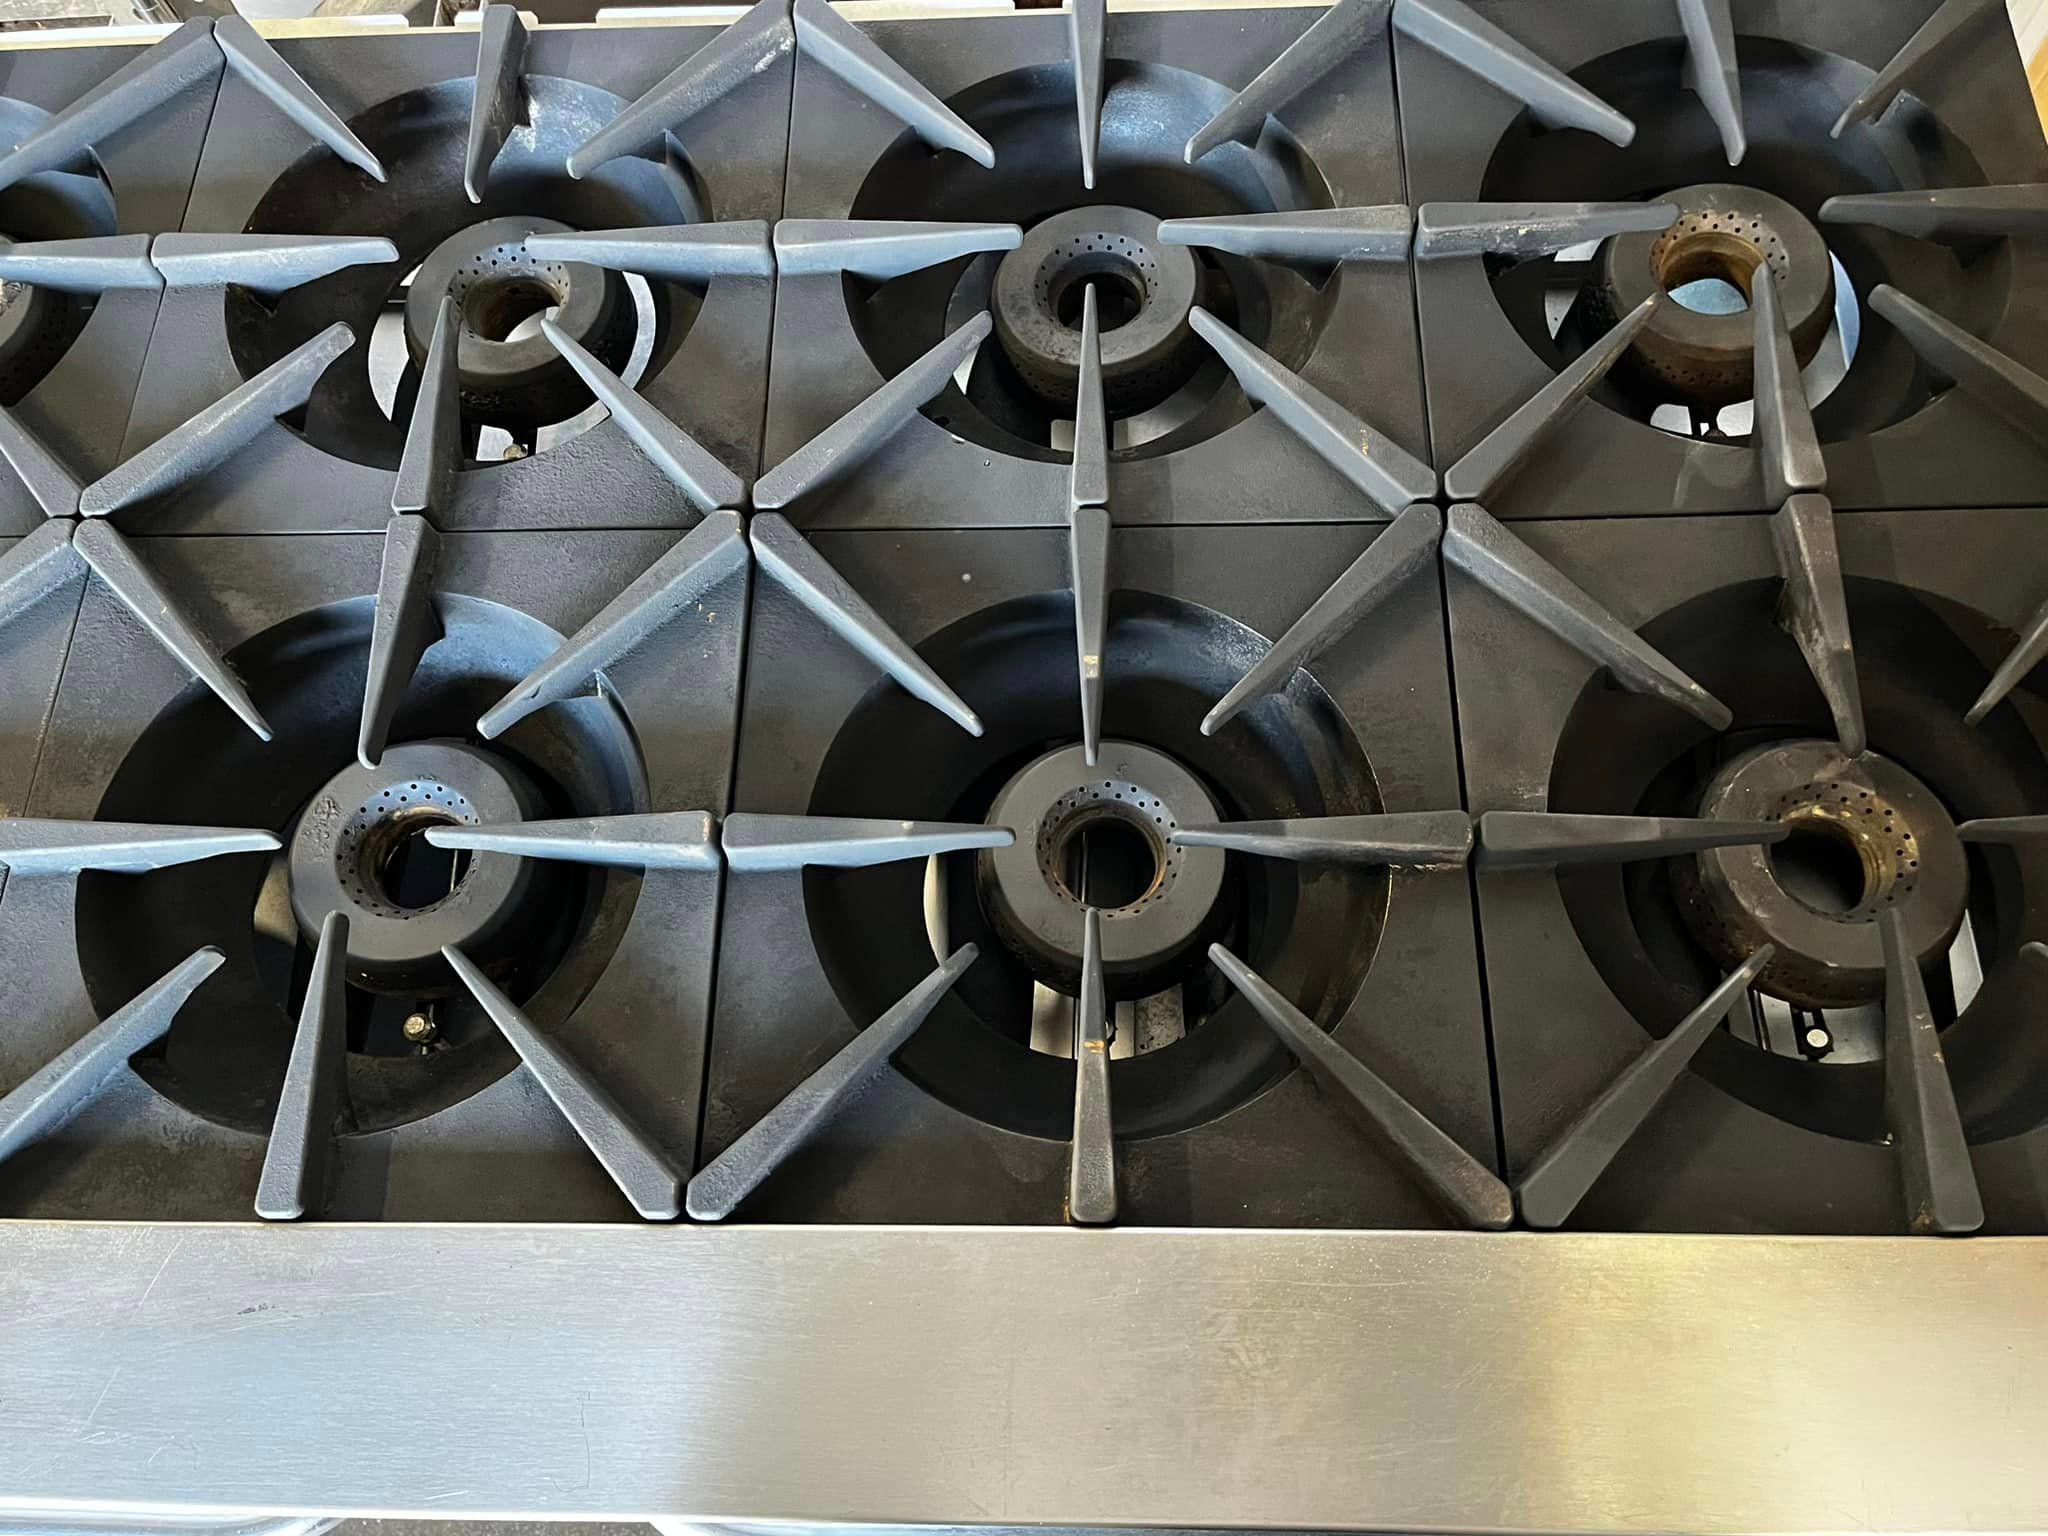 Vulcan 10 Burner Gas Range w/2 Ovens Below